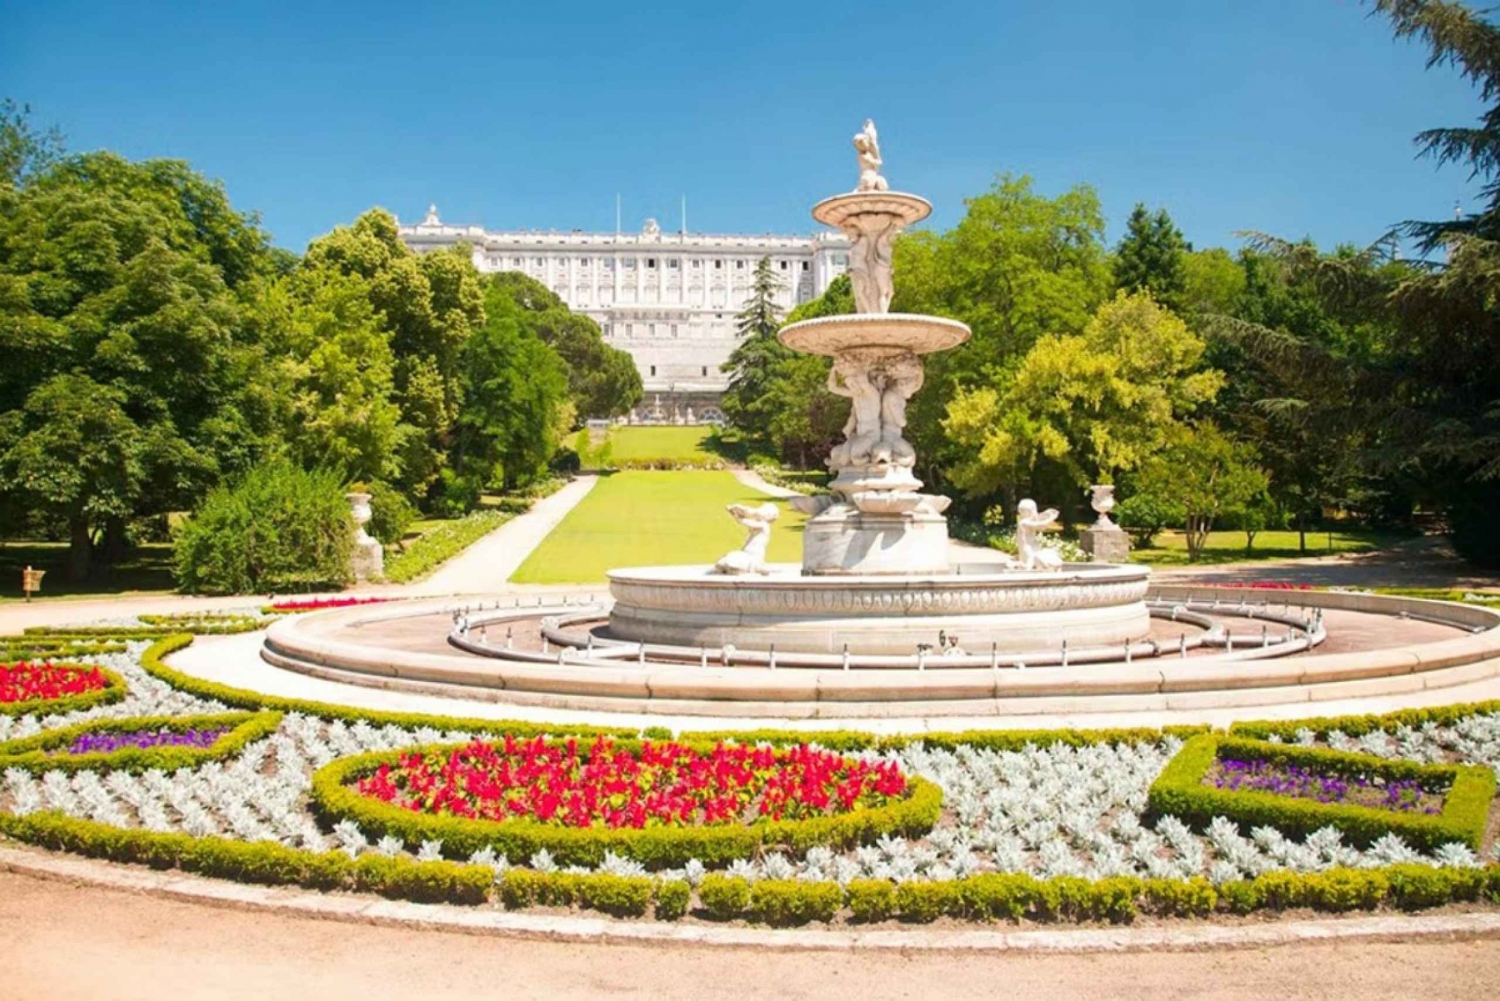 Madrid: Eftermiddagstur till Kungliga palatset med Skip-the-Line-entré